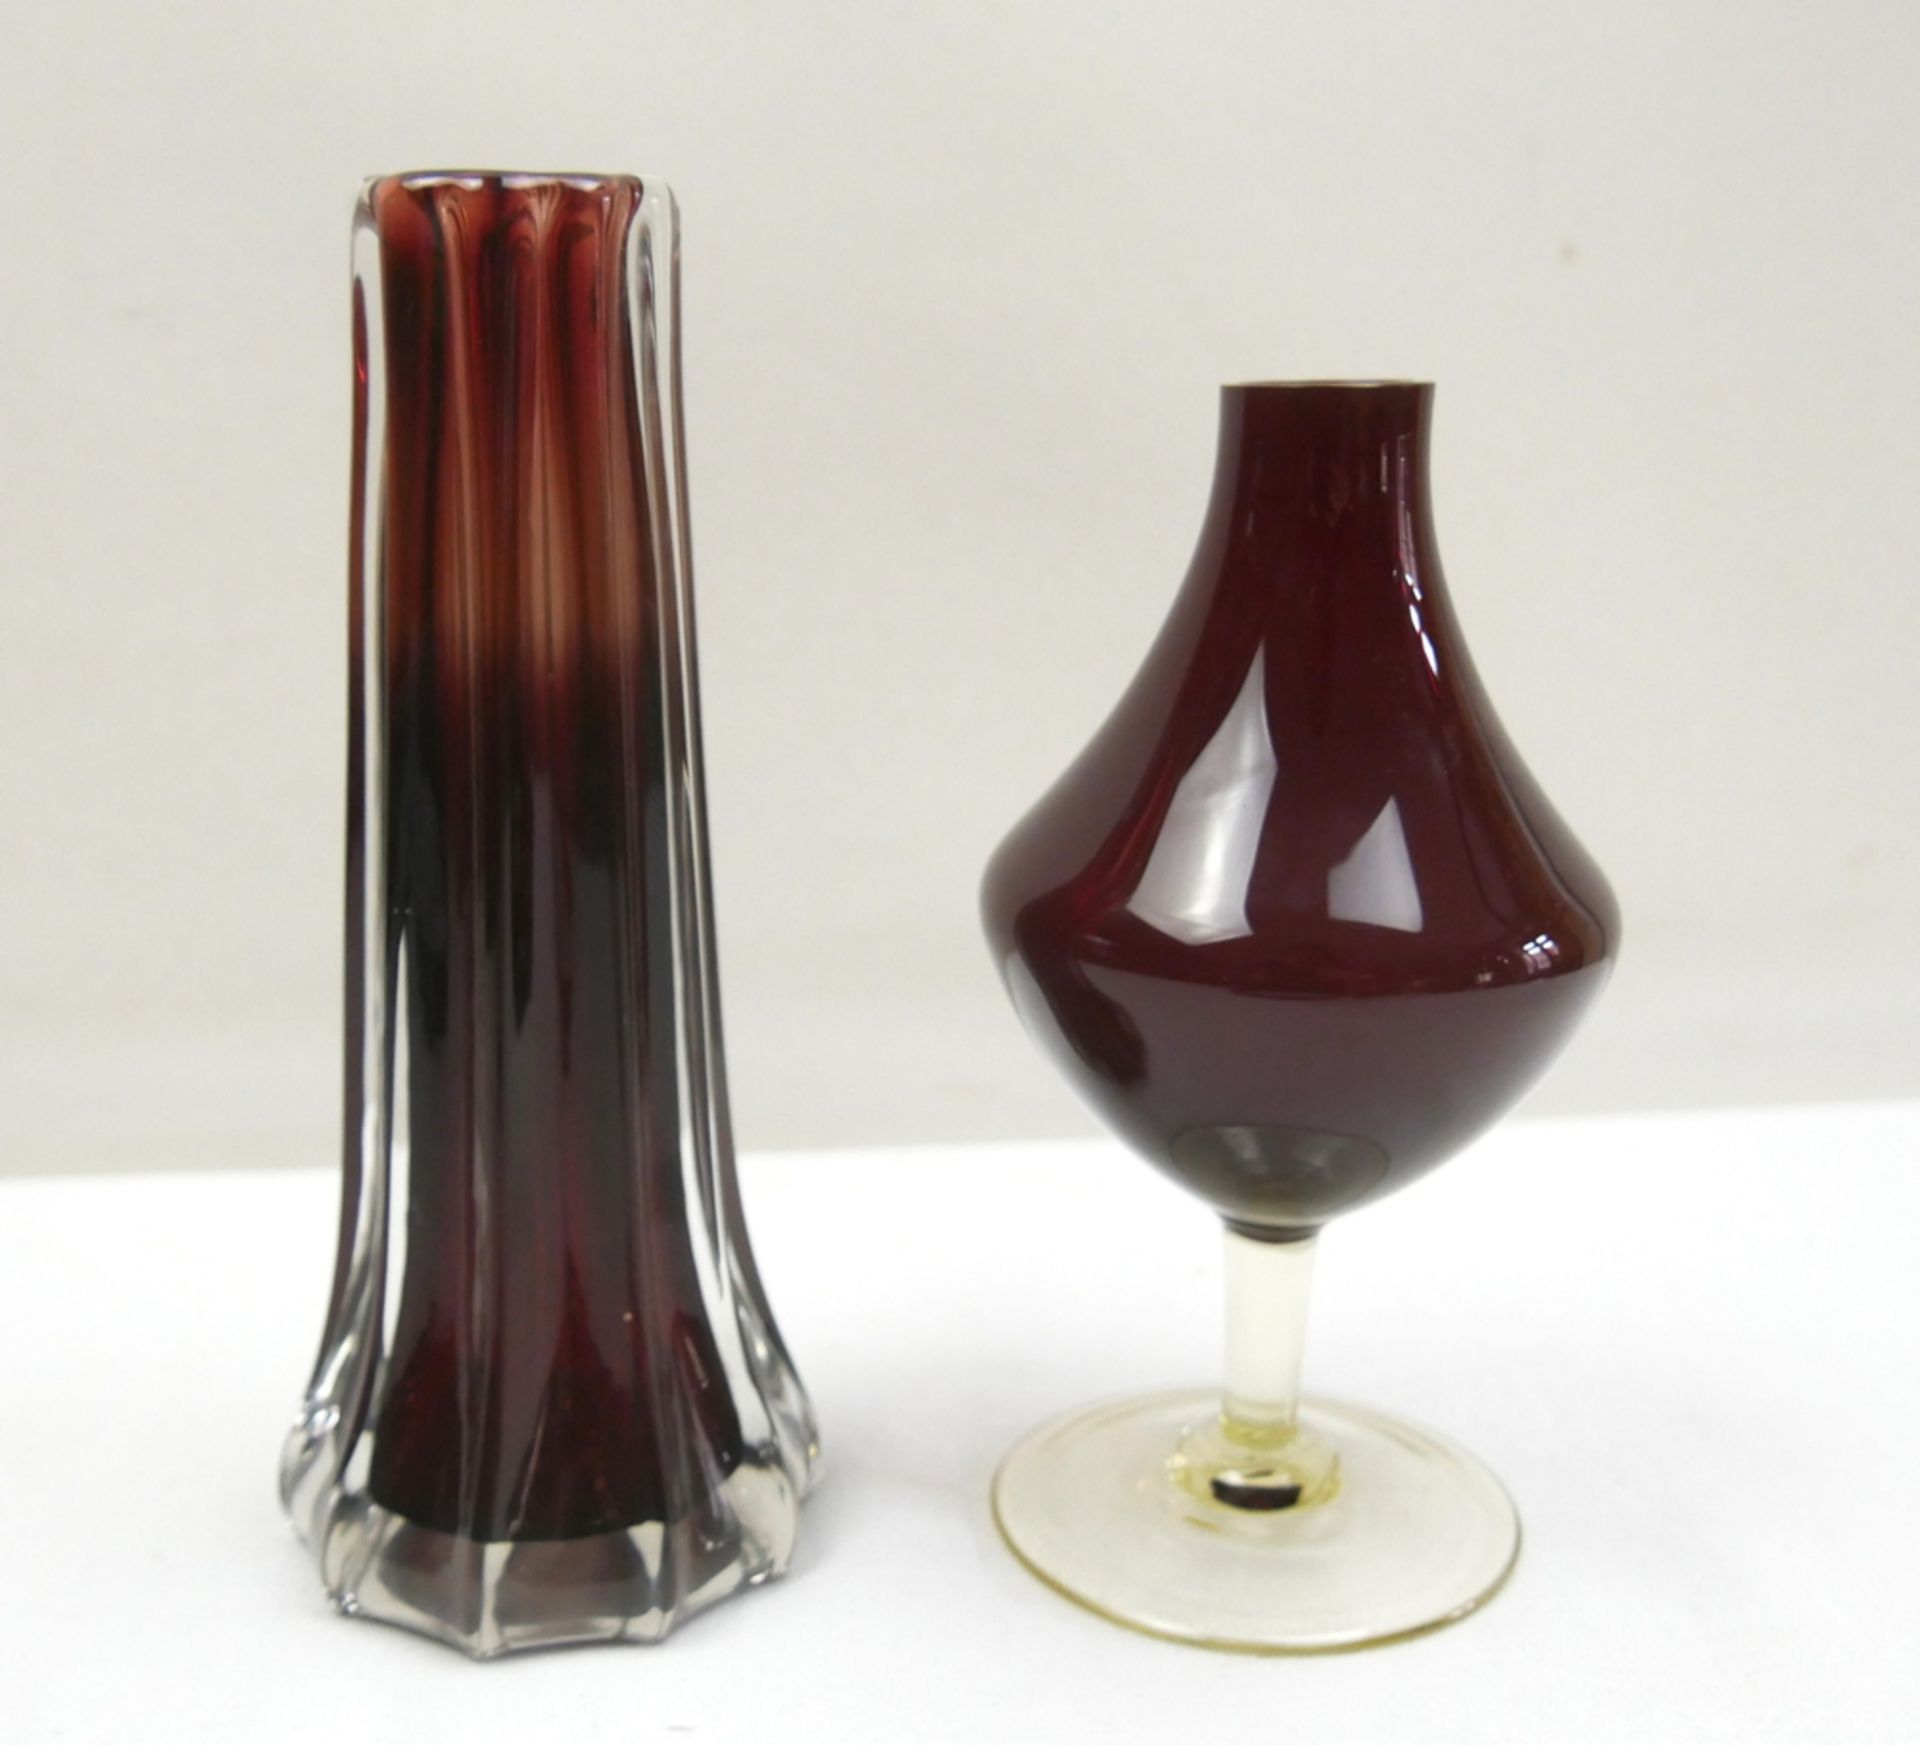 2 violett- rot farbige Glasvasen, verschiedene Modelle.